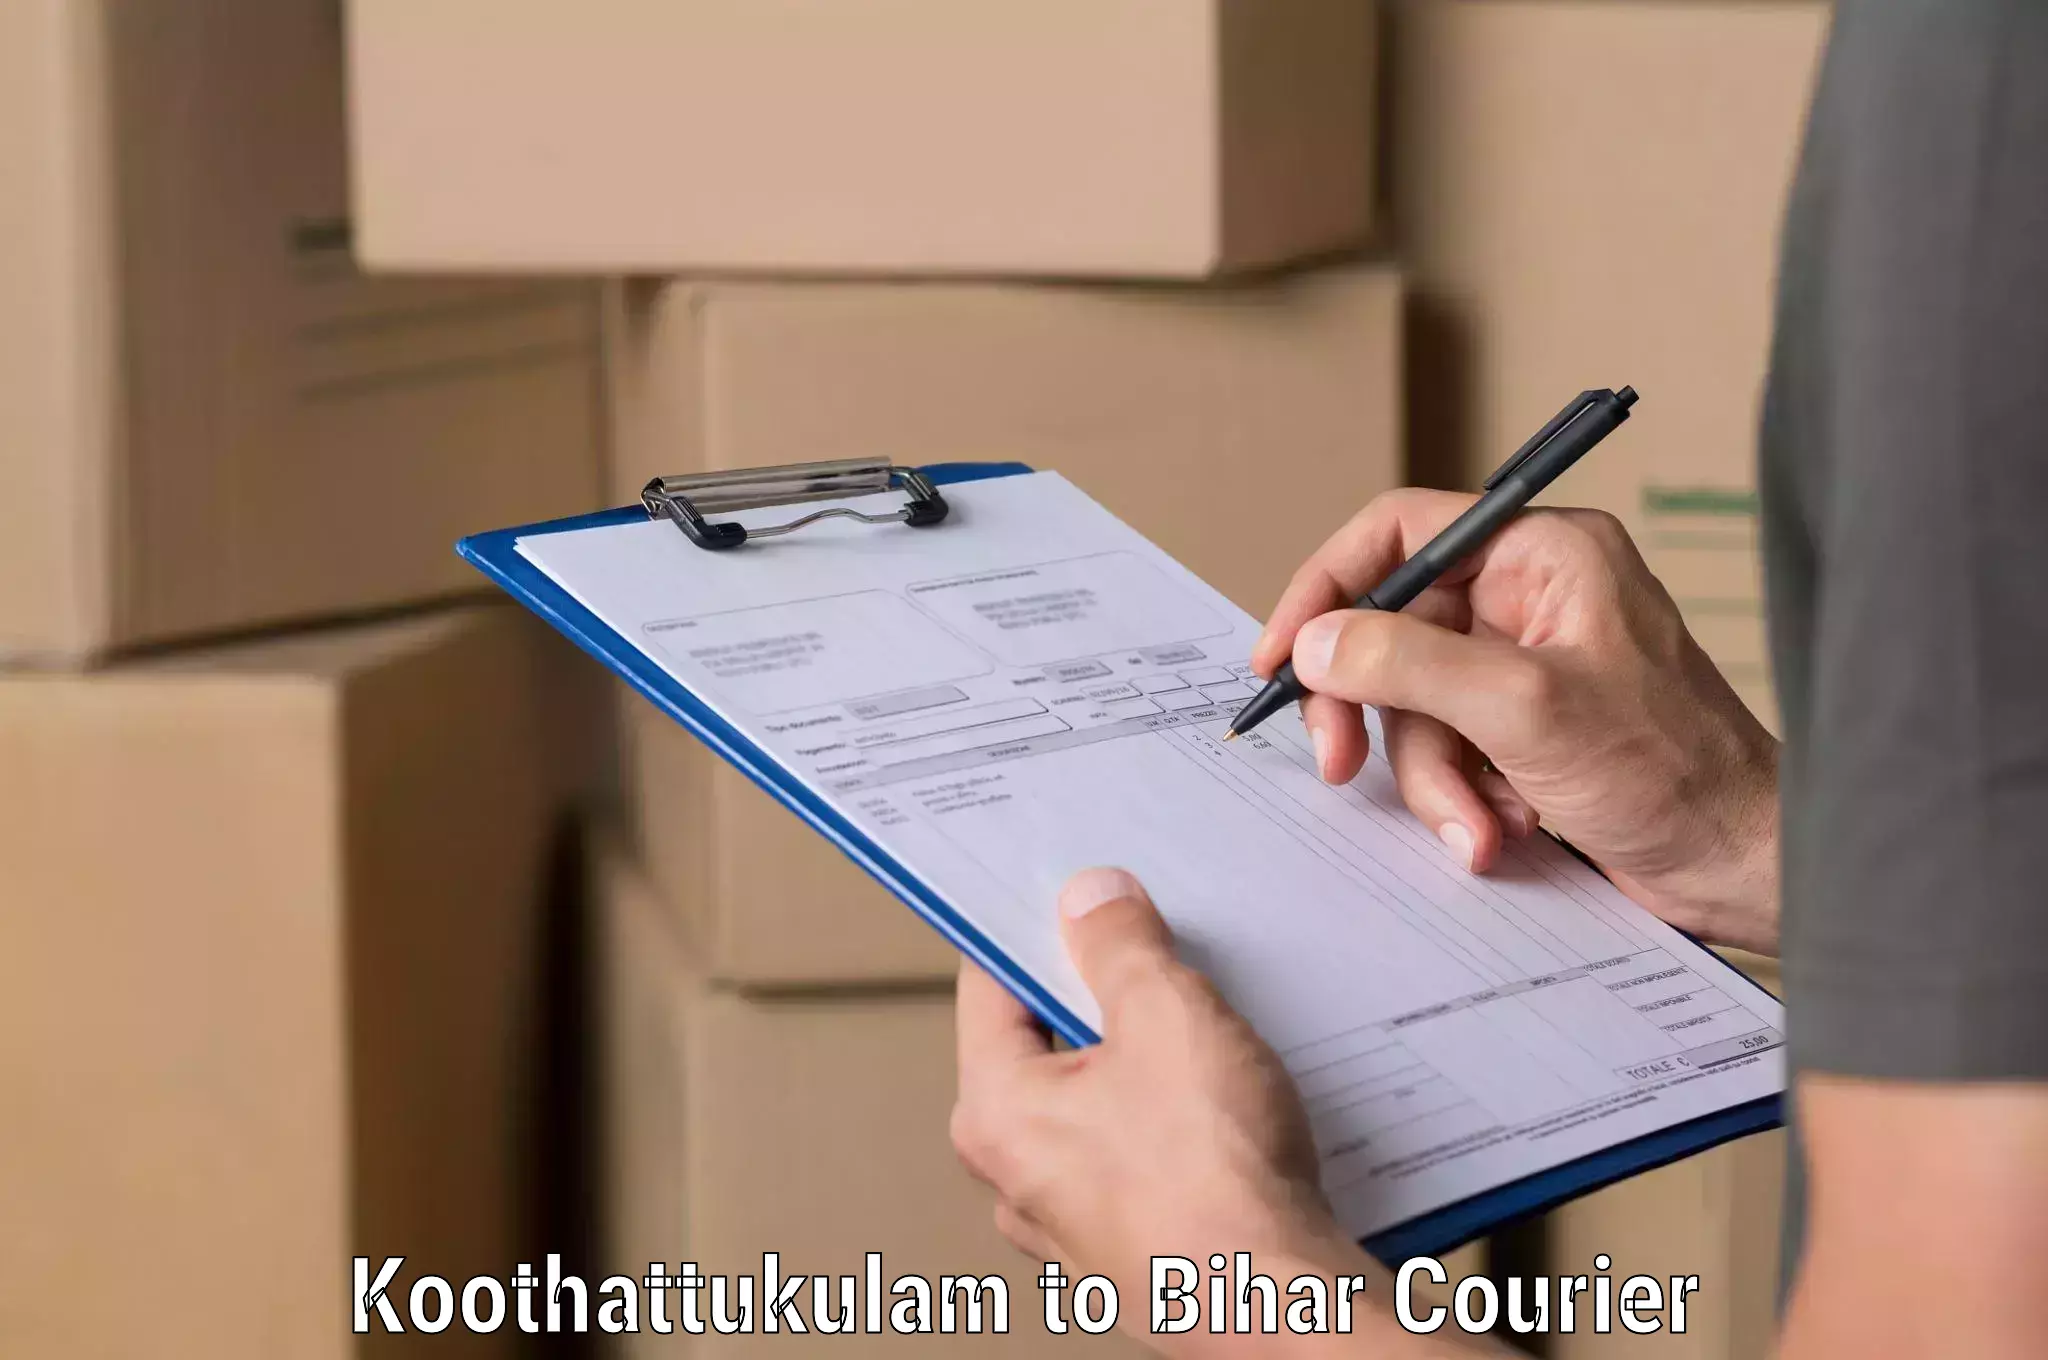 Door-to-door freight service Koothattukulam to Bihar